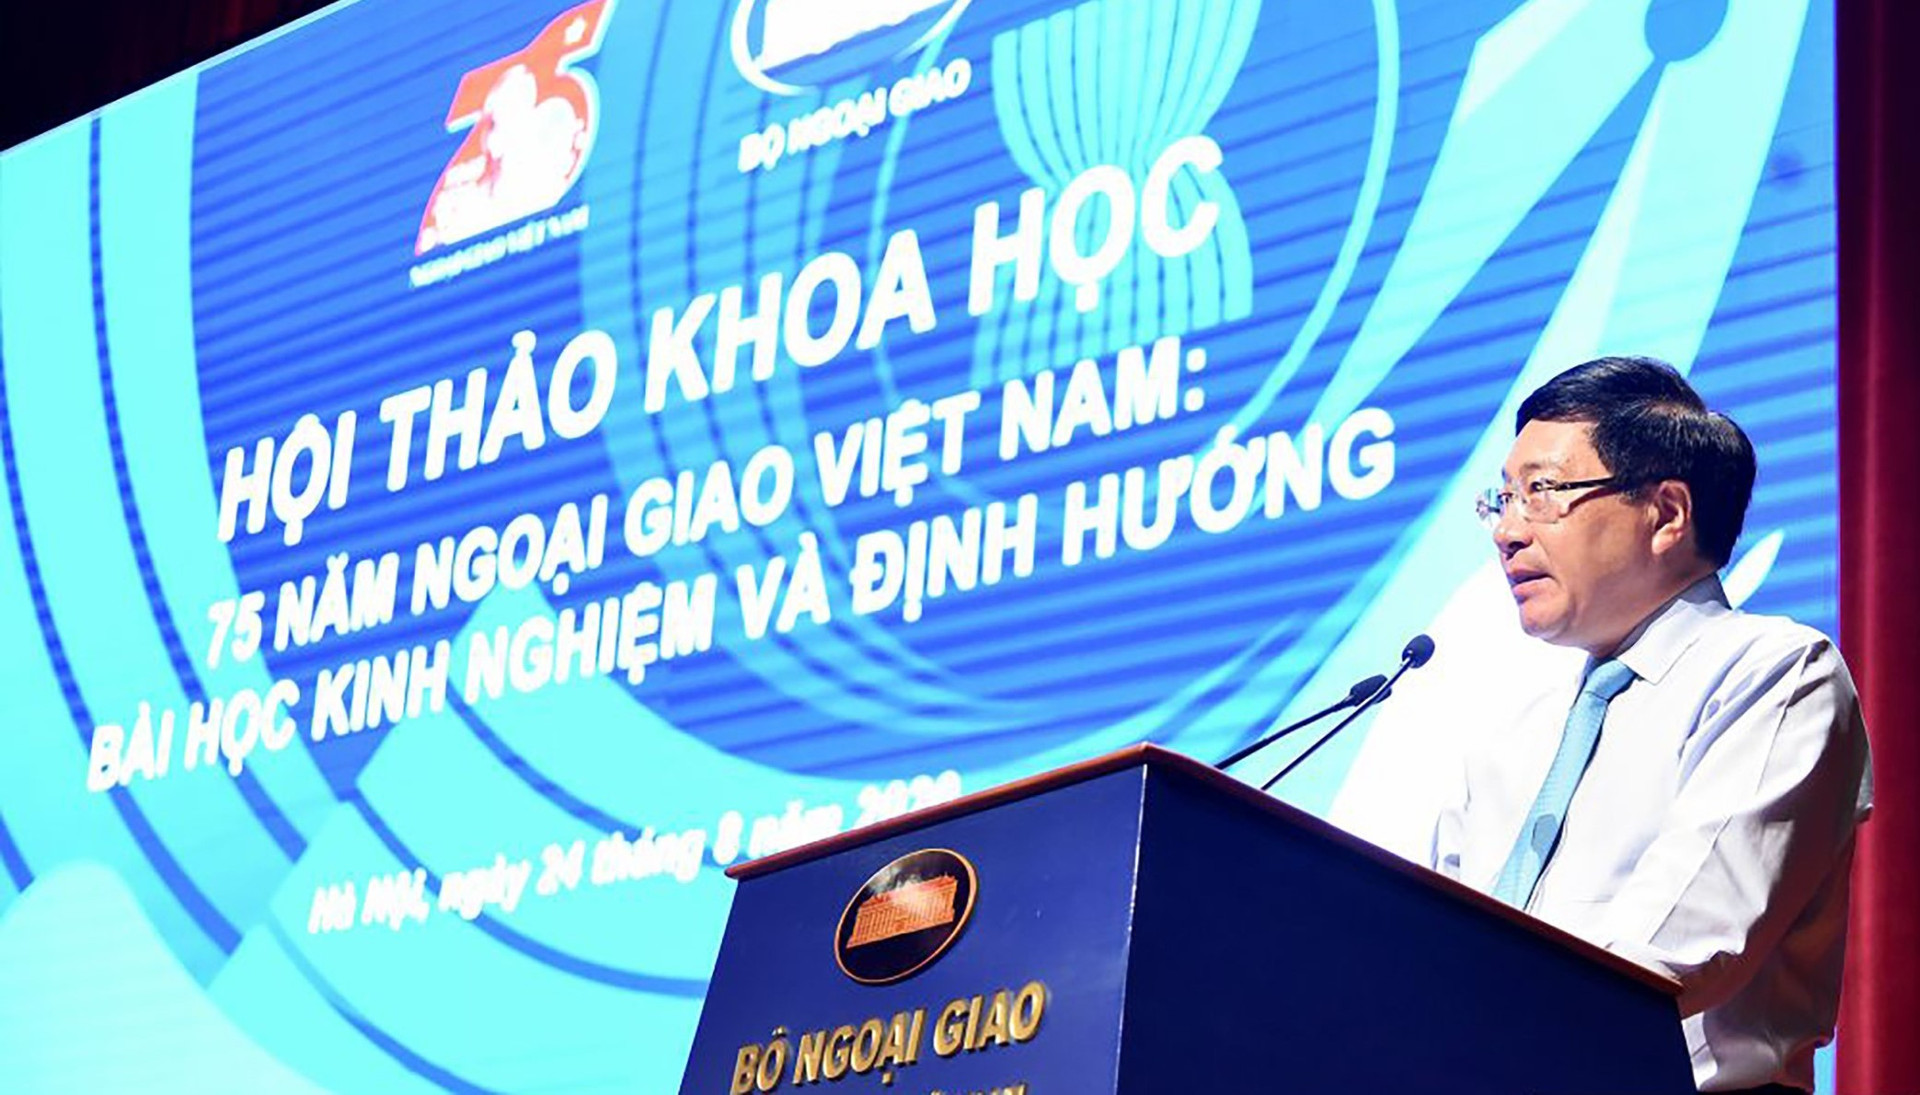 Ngoại giao Việt Nam tiếp tục vững bước tiến lên, góp phần quan trọng xây dựng, bảo vệ Tổ quốc - Ảnh 1.